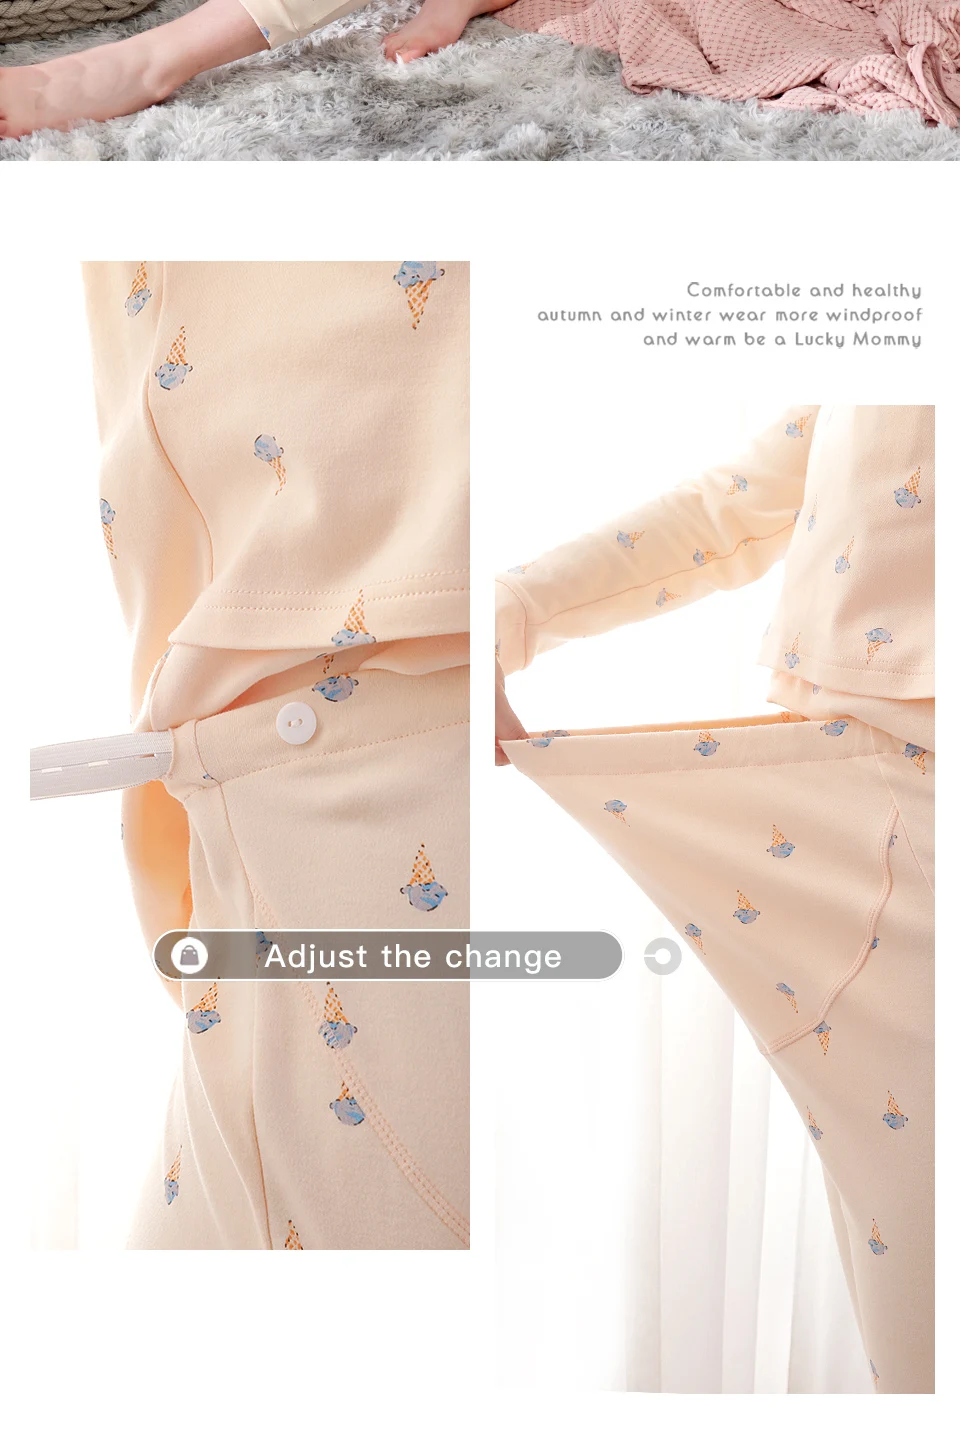 YATEMAO 2 шт./компл. утолщенной беременности и родам пижамные комплекты Топ и штаны, спортивный костюм Беременность пижамы кормящих ночная рубашка для беременных кормления Костюмы